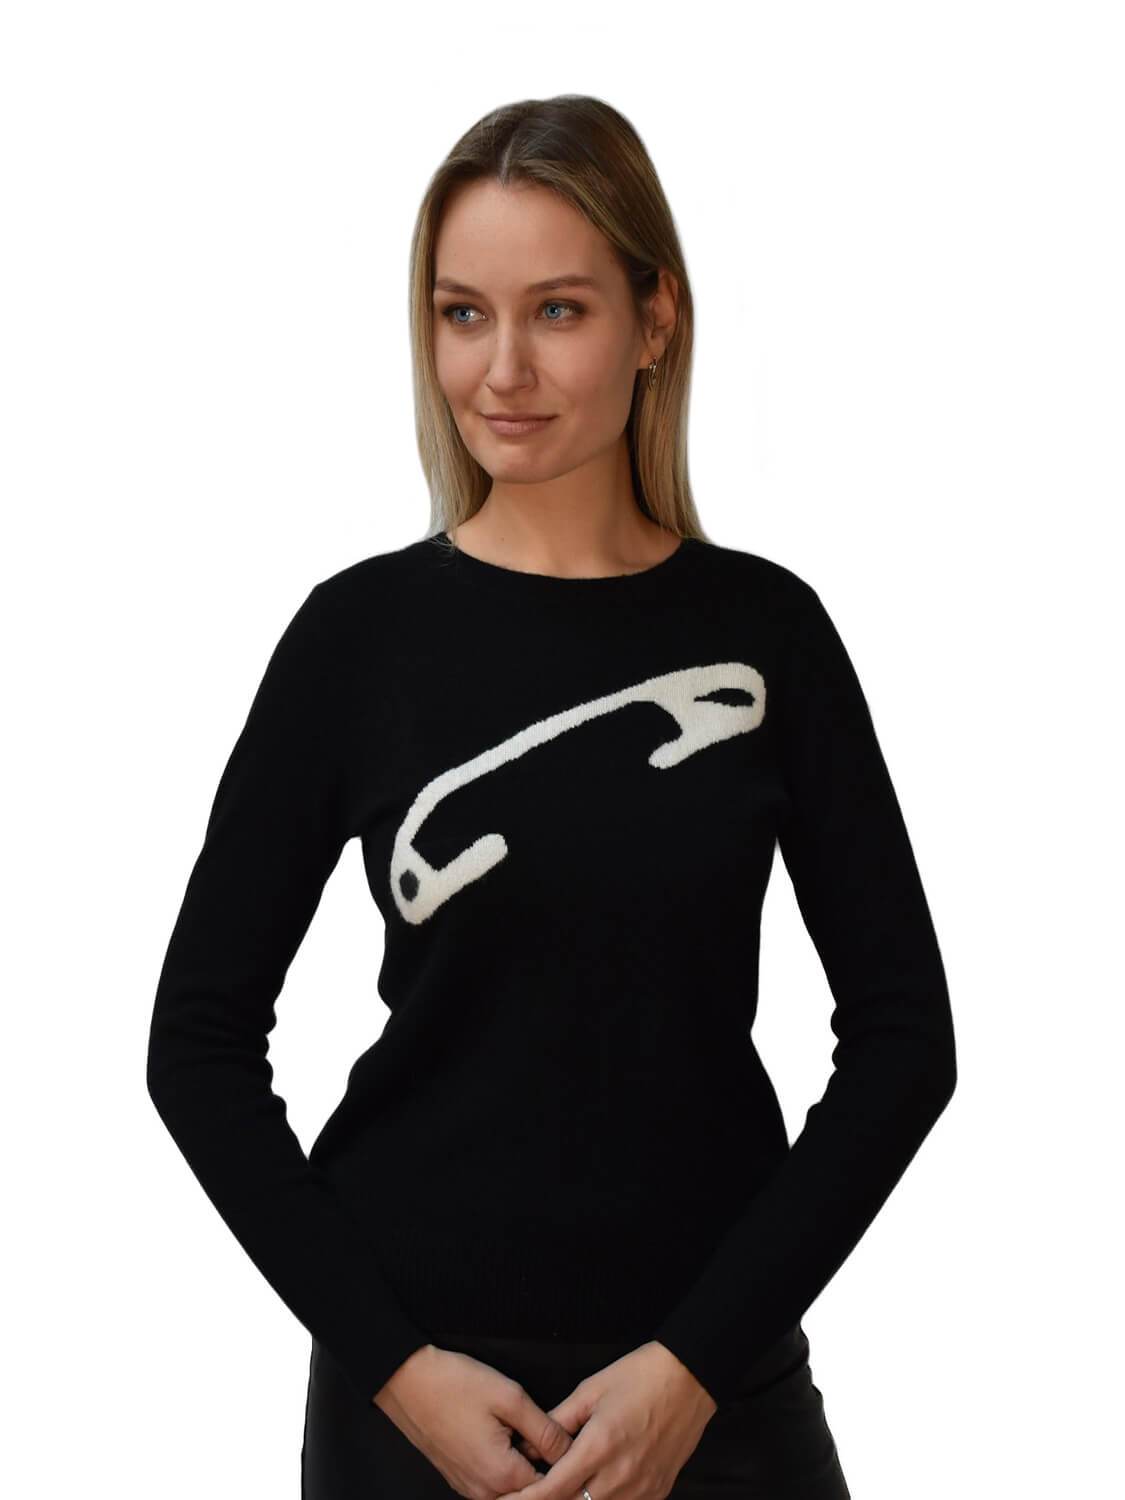 CODO Cashmere Pin Sweater Black White